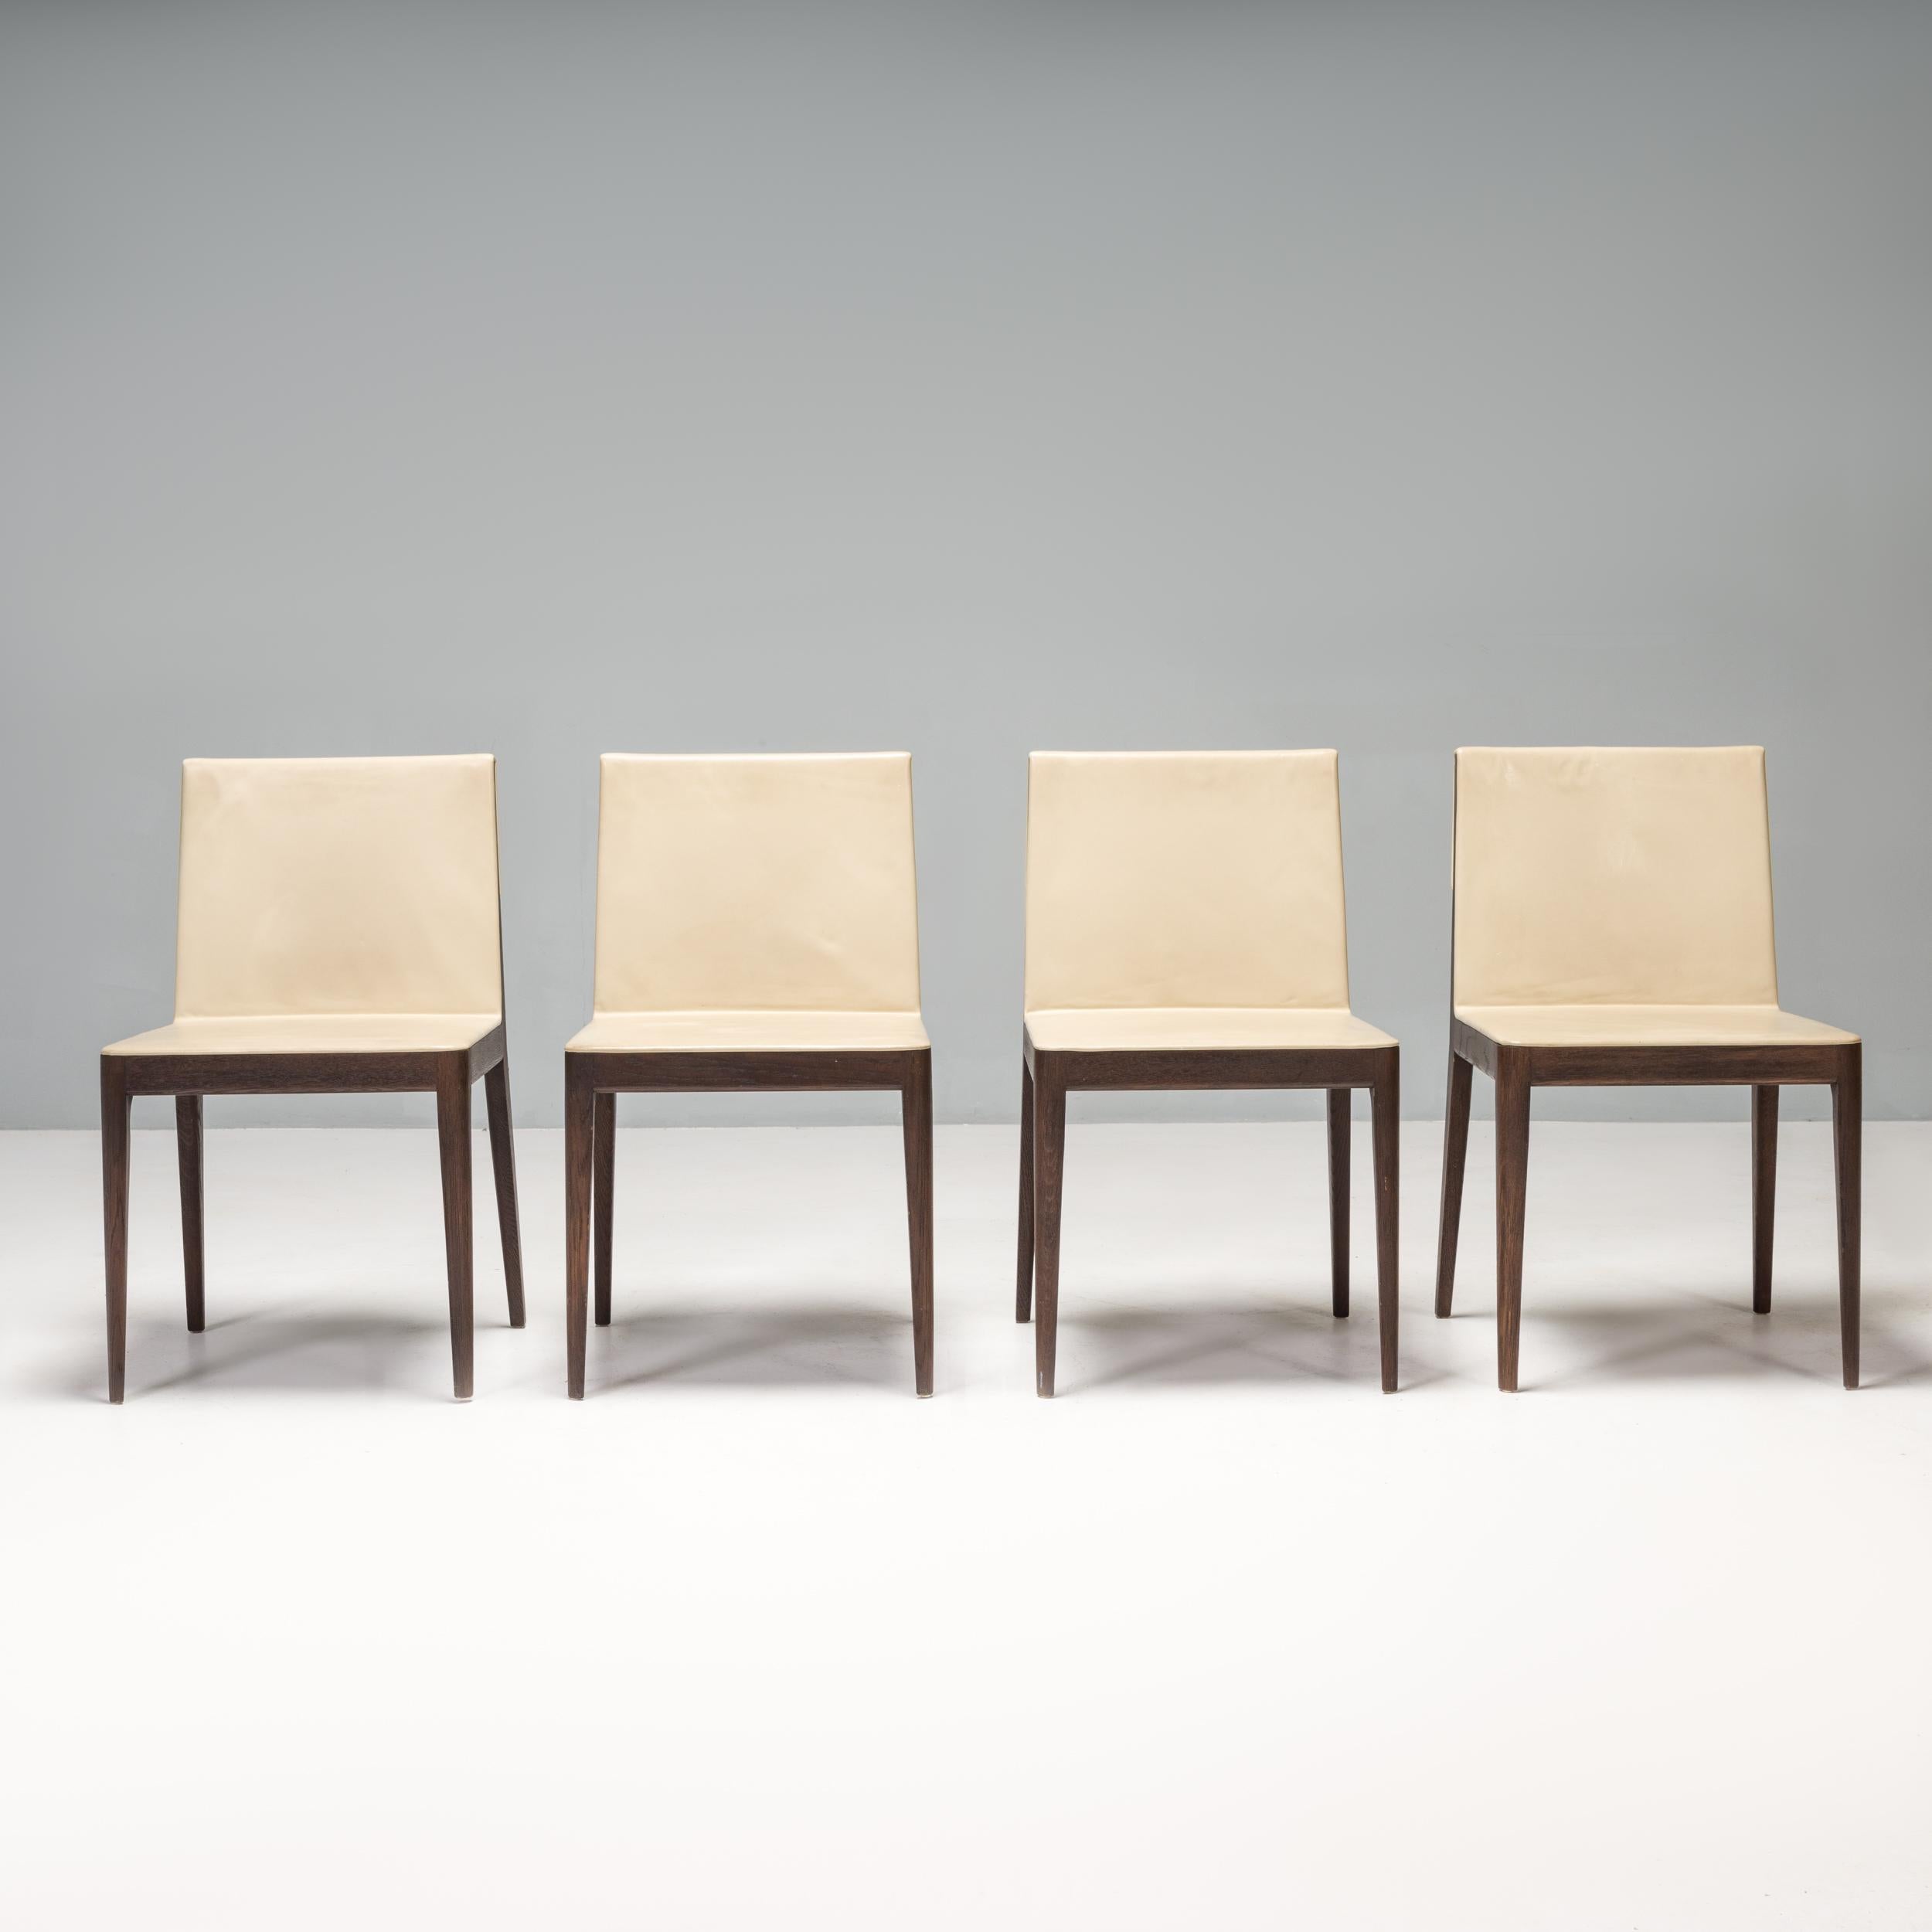 Der ursprünglich von Antonio Citterio im Jahr 2009 für B&B Italia entworfene EL Esszimmerstuhl ist ein elegantes und anspruchsvolles Designobjekt.

Die Stühle mit ihrer reduzierten Silhouette haben einen massiven Rahmen aus geräucherter, gebeizter